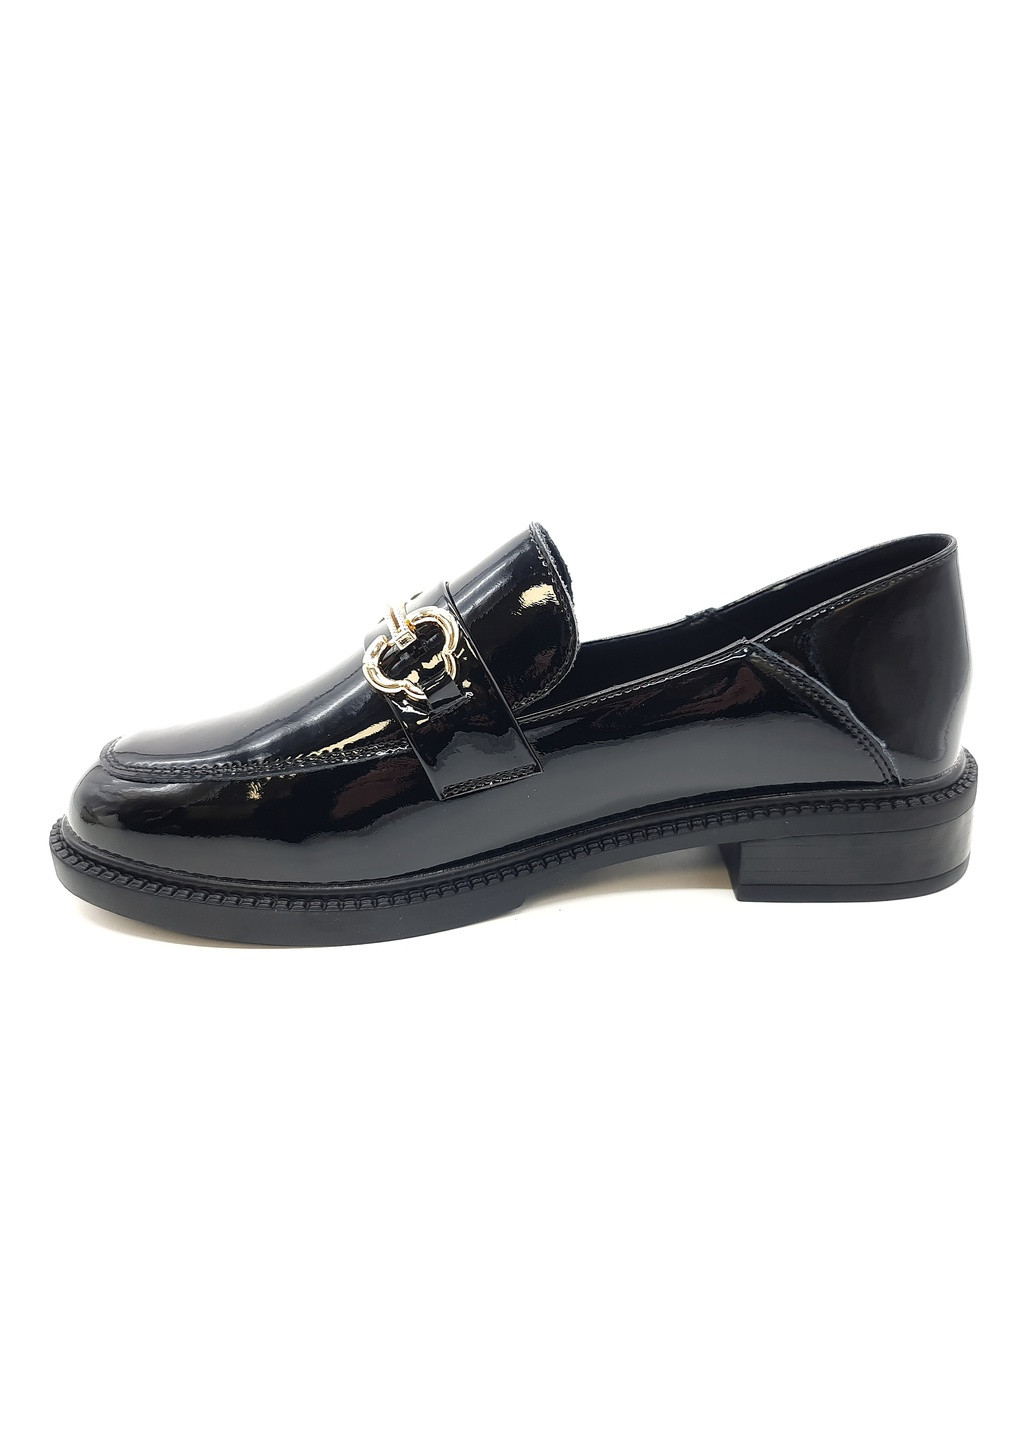 Жіночі туфлі чорні лакована шкіра YA-18-4 23 см (р) Yalasou (260007648)